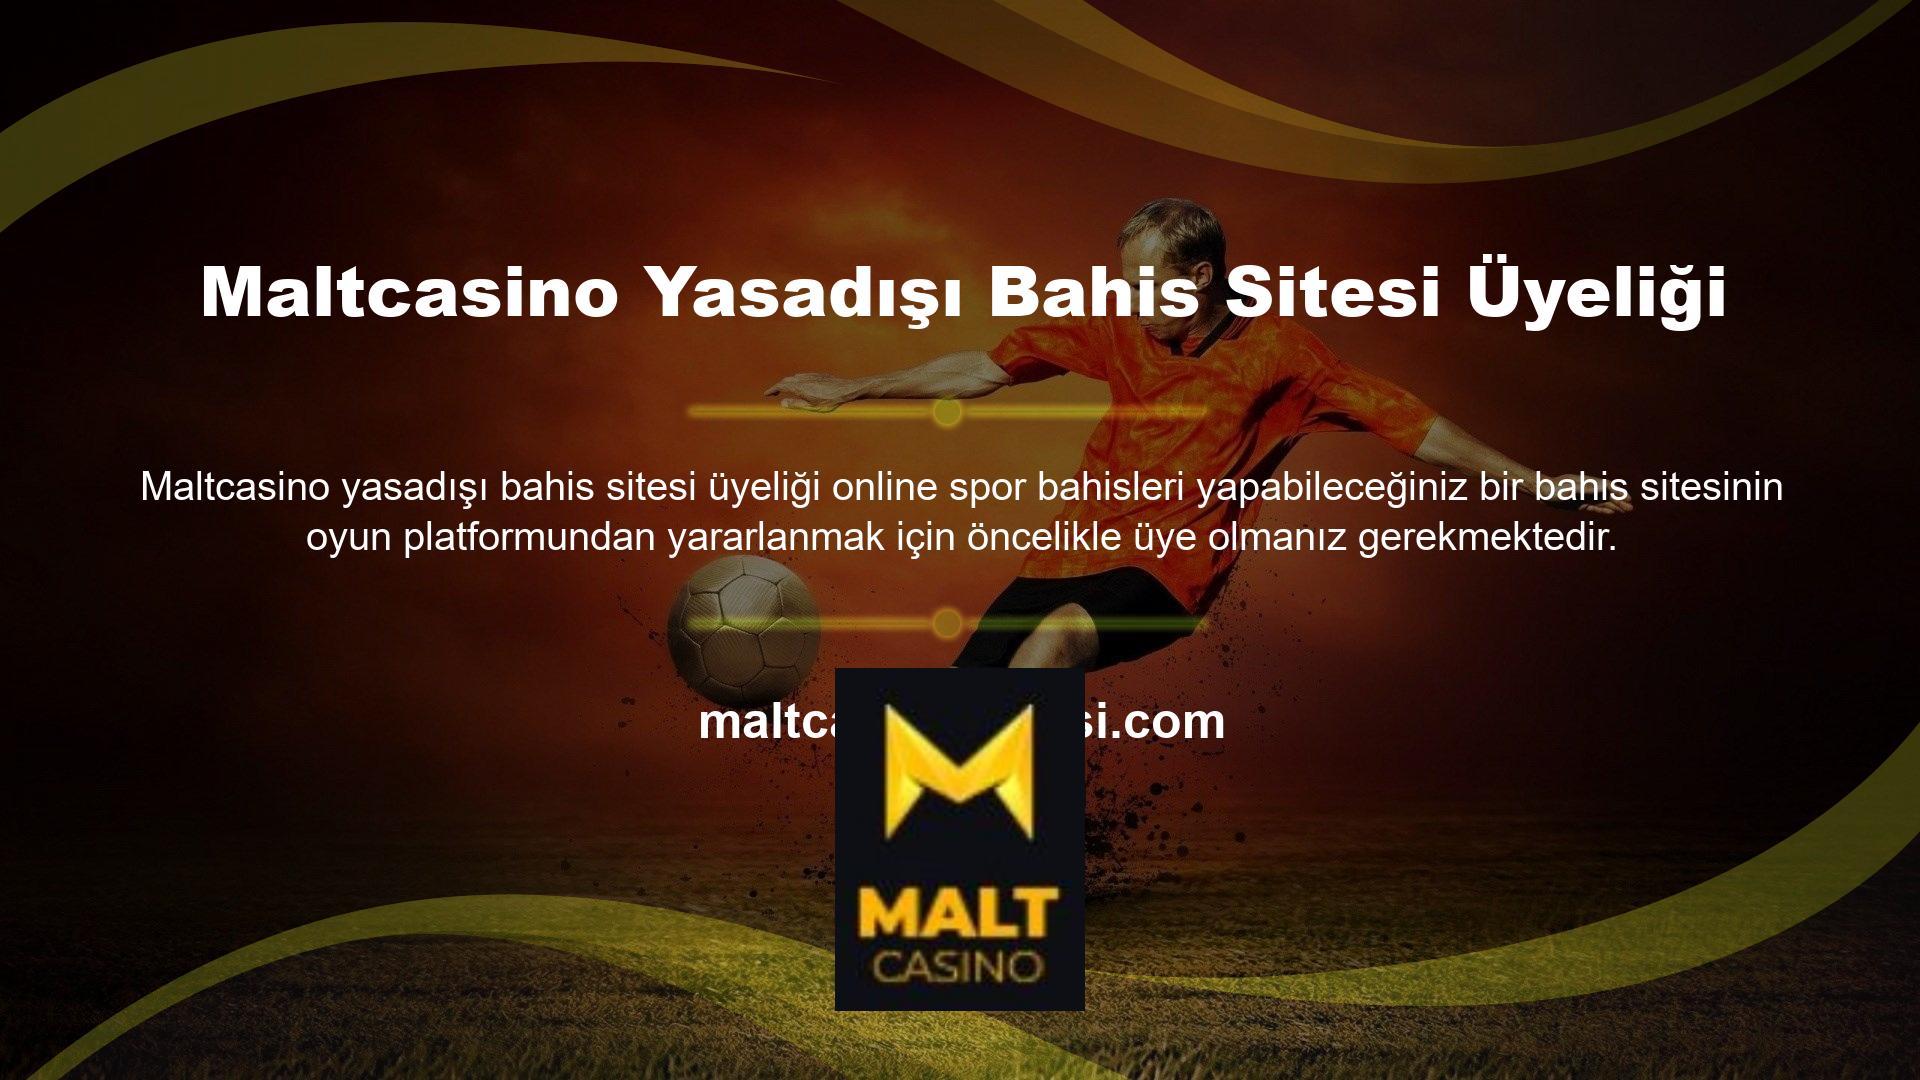 Yasadışı casino hizmeti sunan web siteleri, müşterilerine 7/24 bahis ve casino oyunlarını ücretsiz üyelikle sunmaktadır